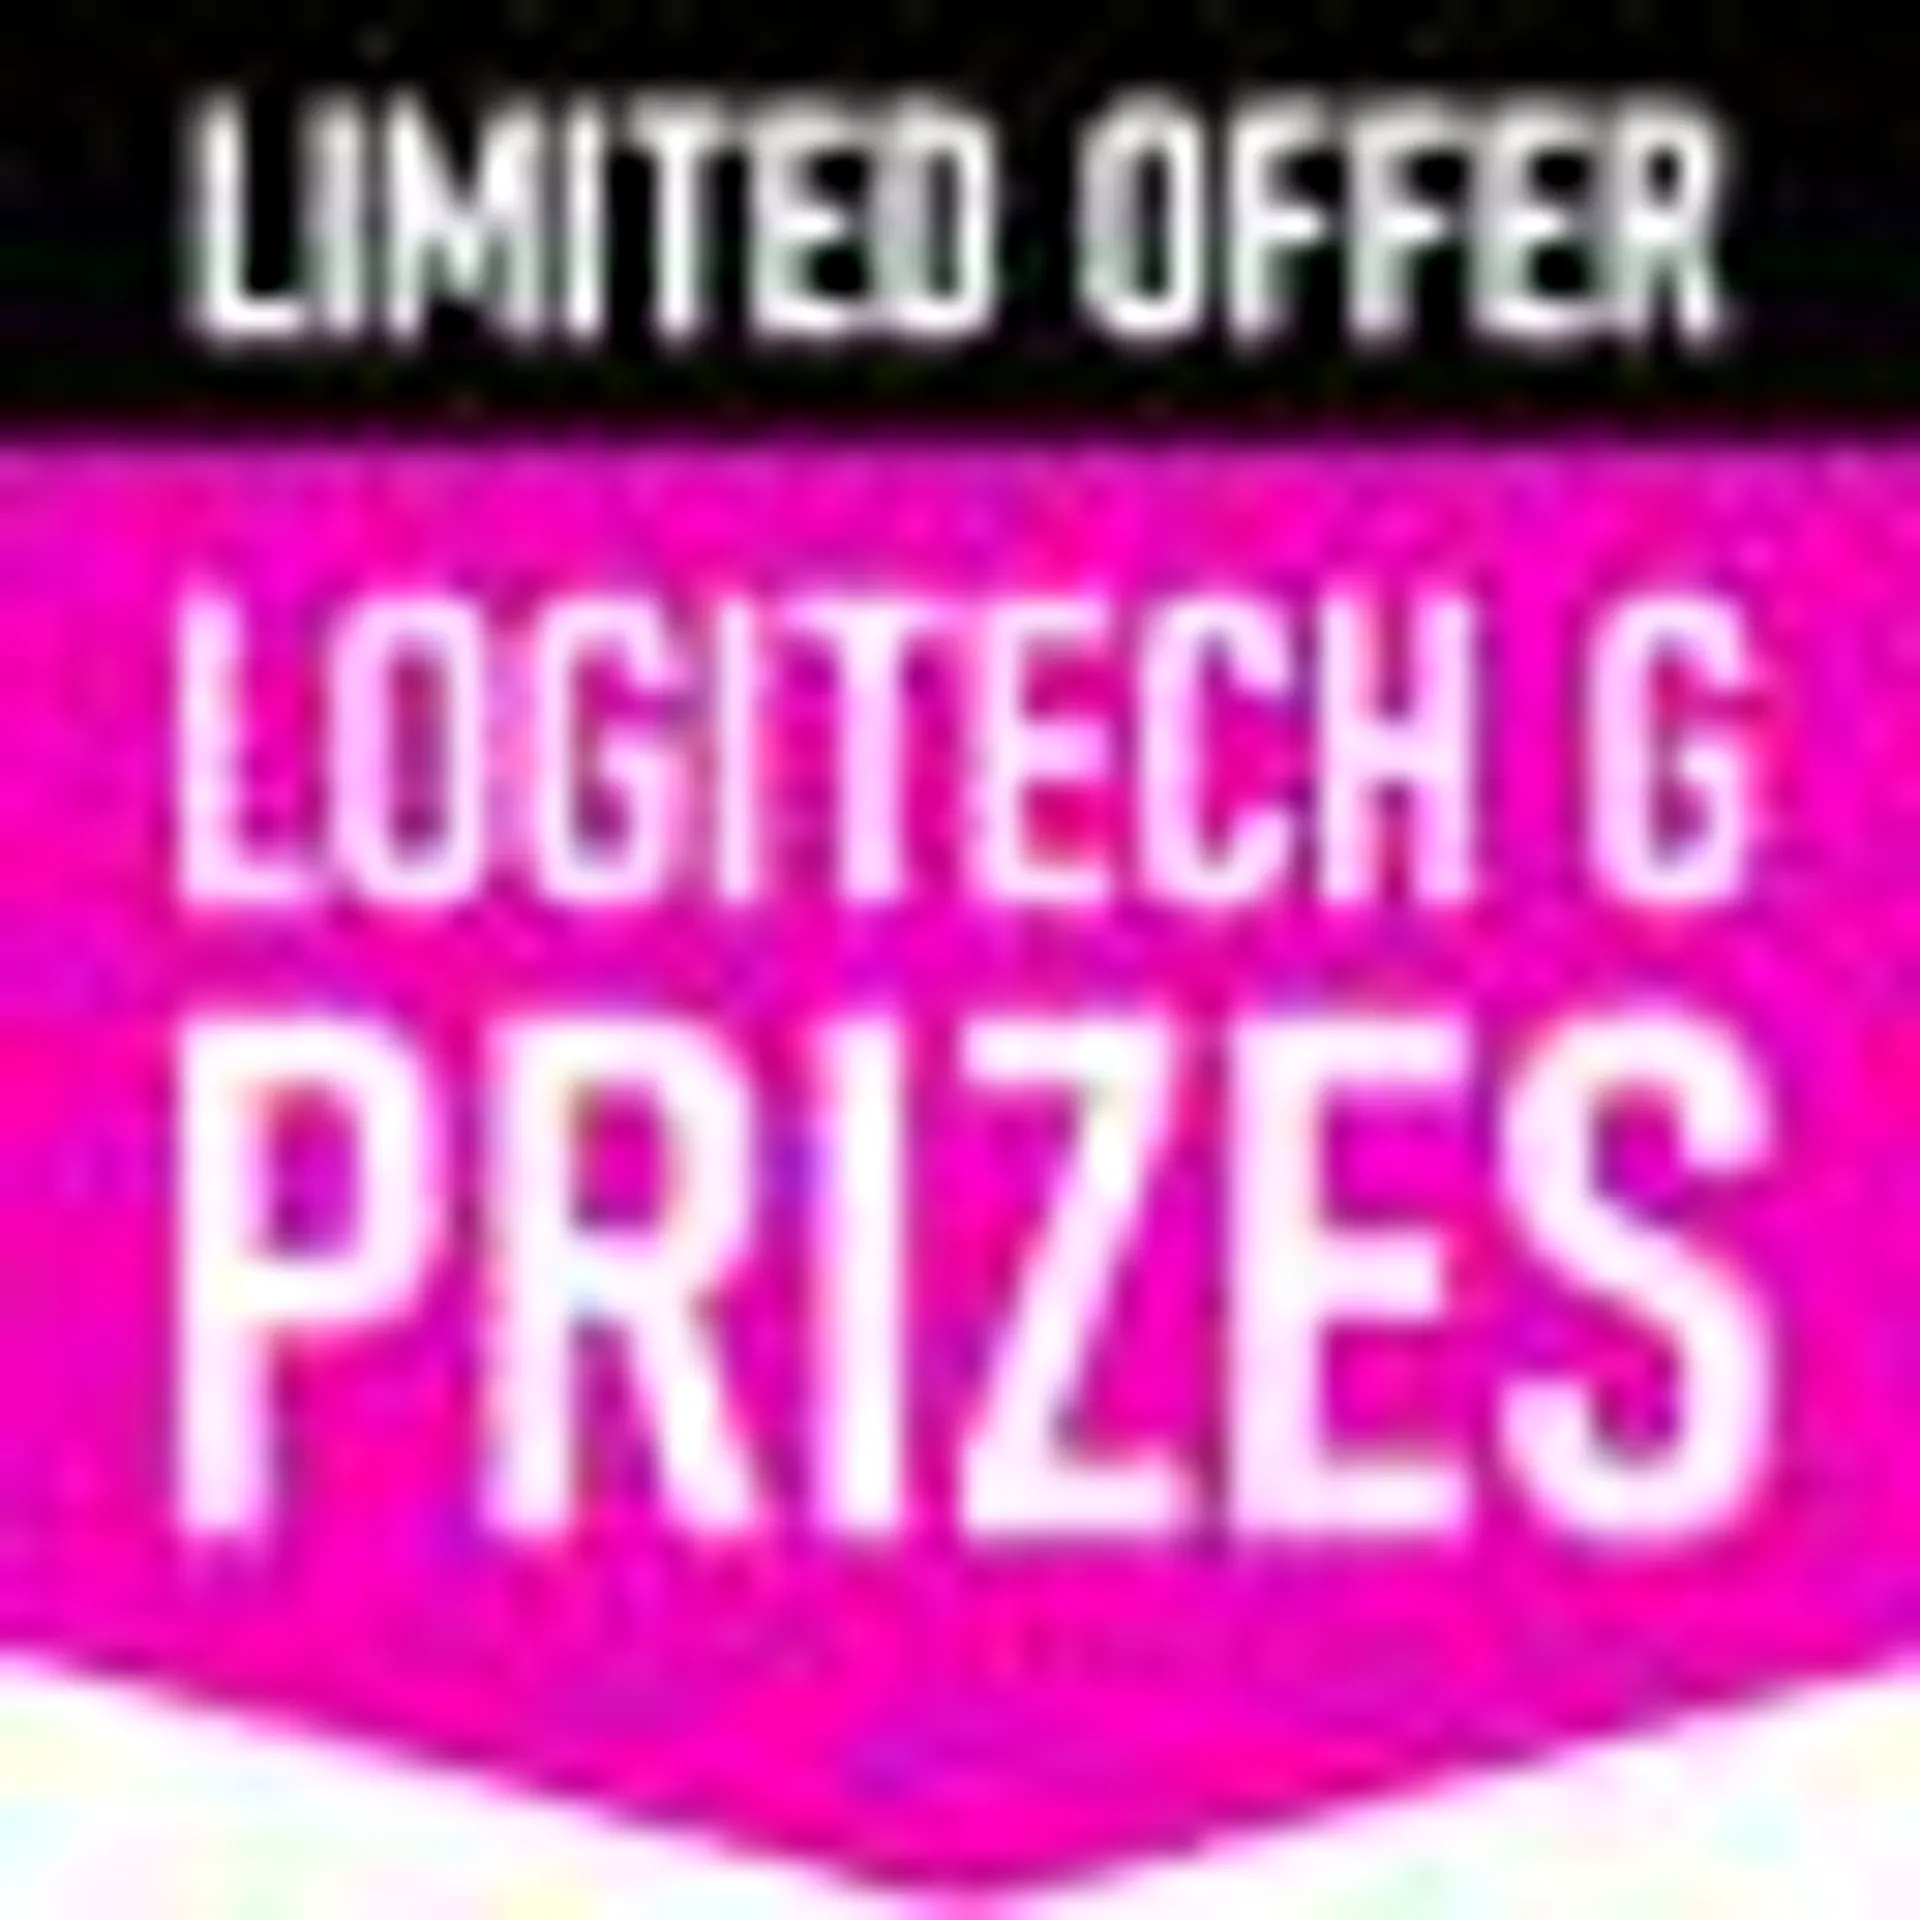 Logitech GGPC BONUS + Prize Event!